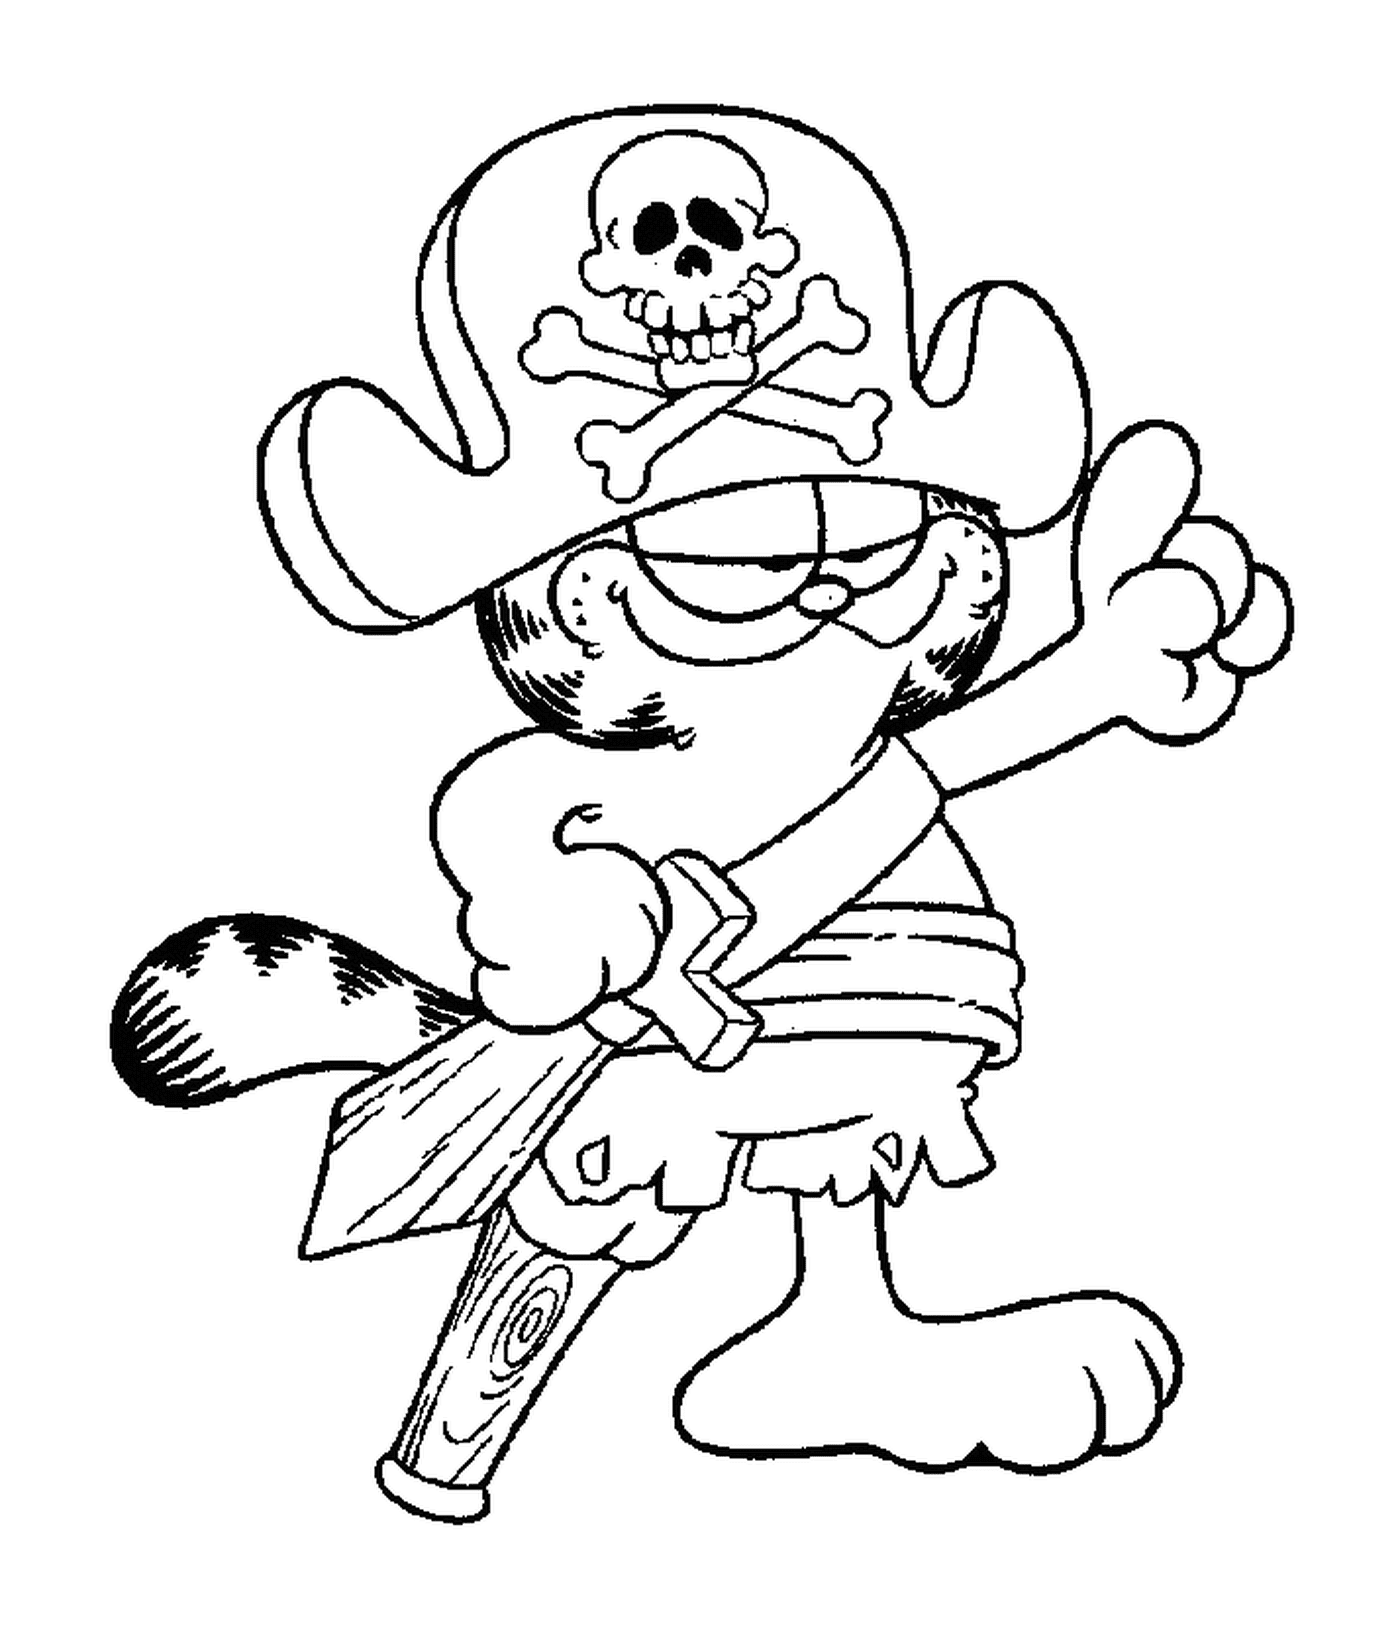  Garfield als Pirat verkleidet 